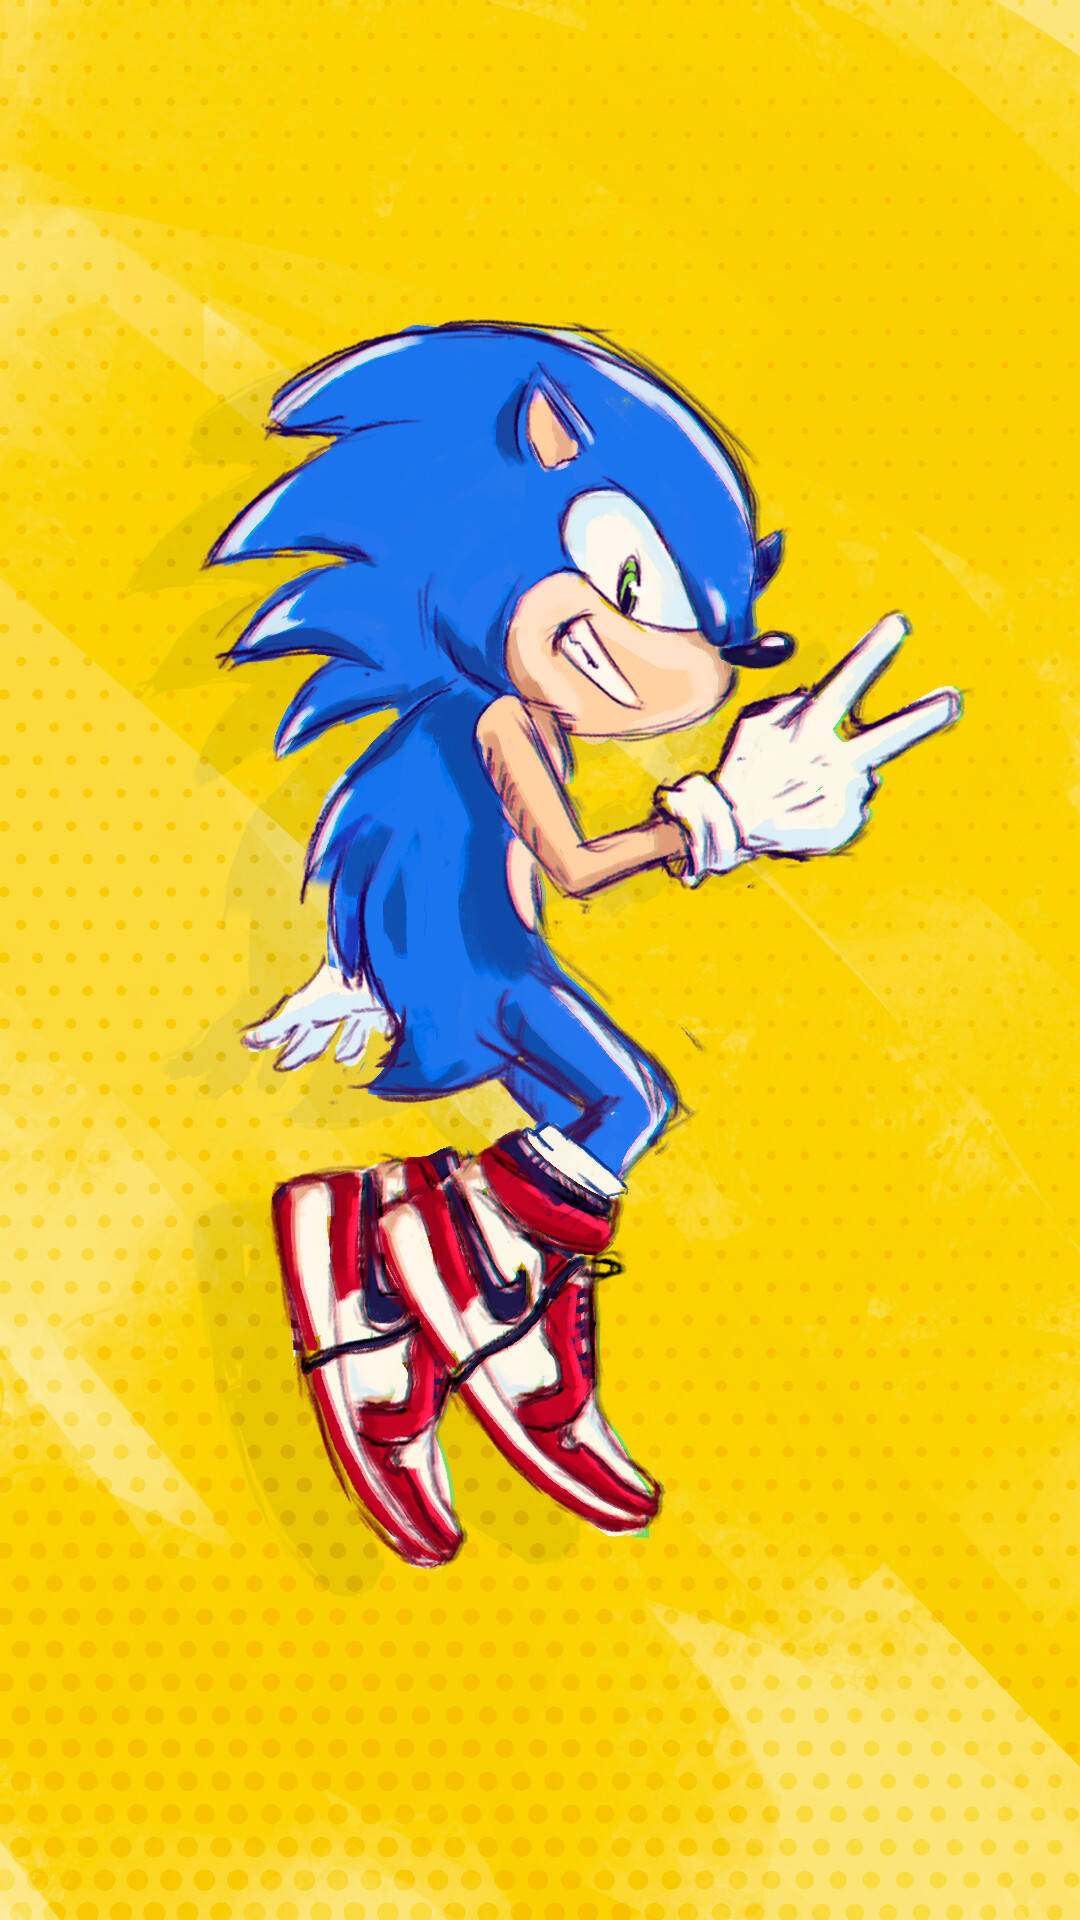 Sonic The Hedgehog på en gul baggrund Wallpaper